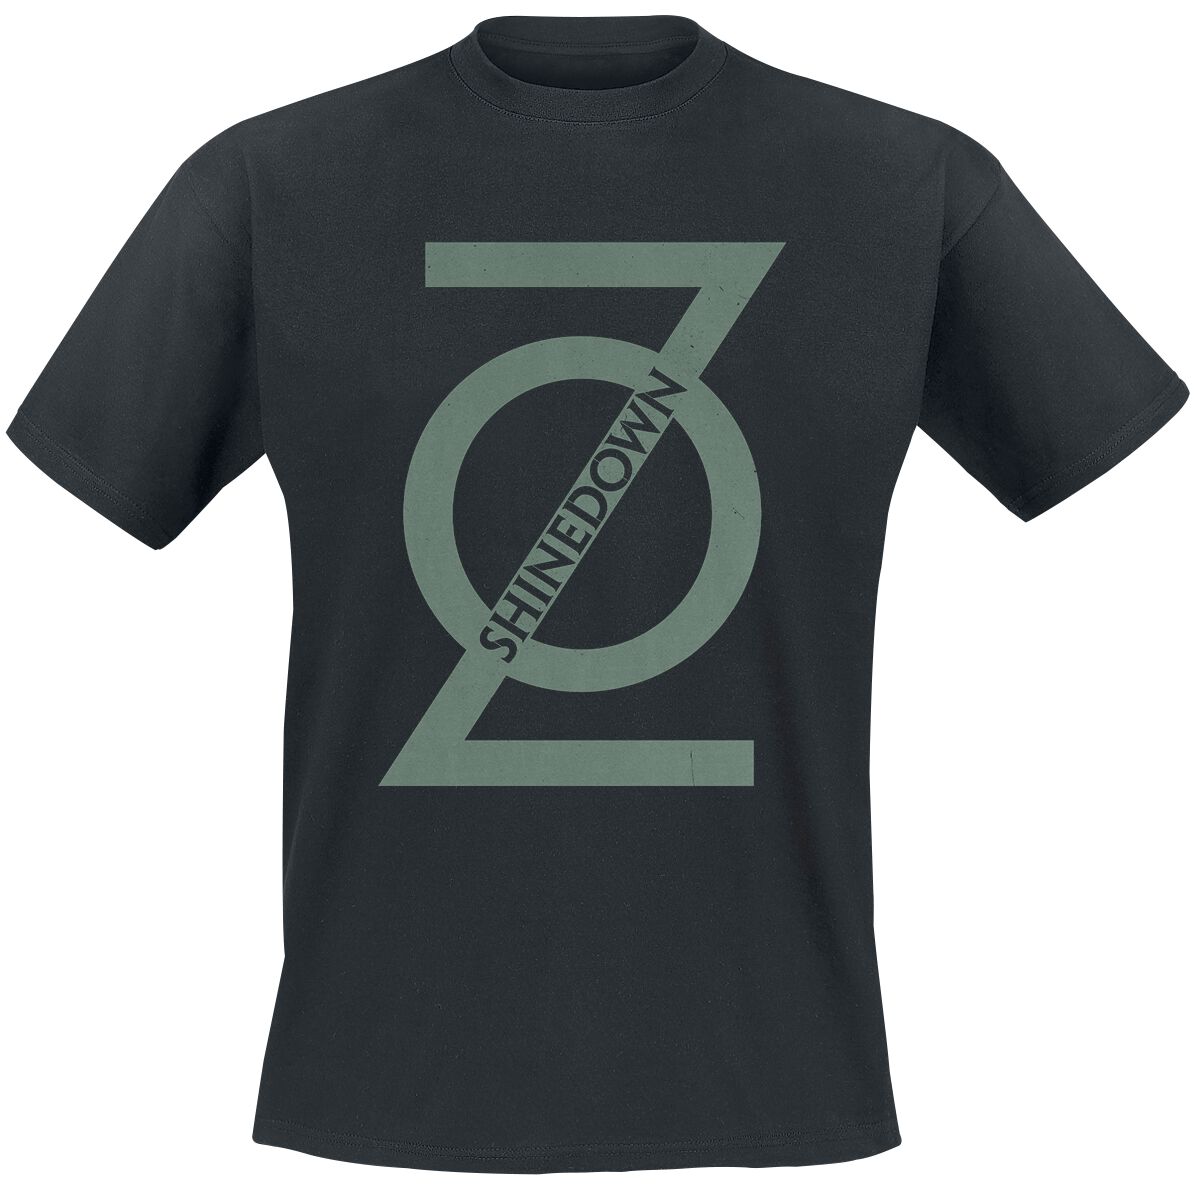 Shinedown Secondary Name T-Shirt black